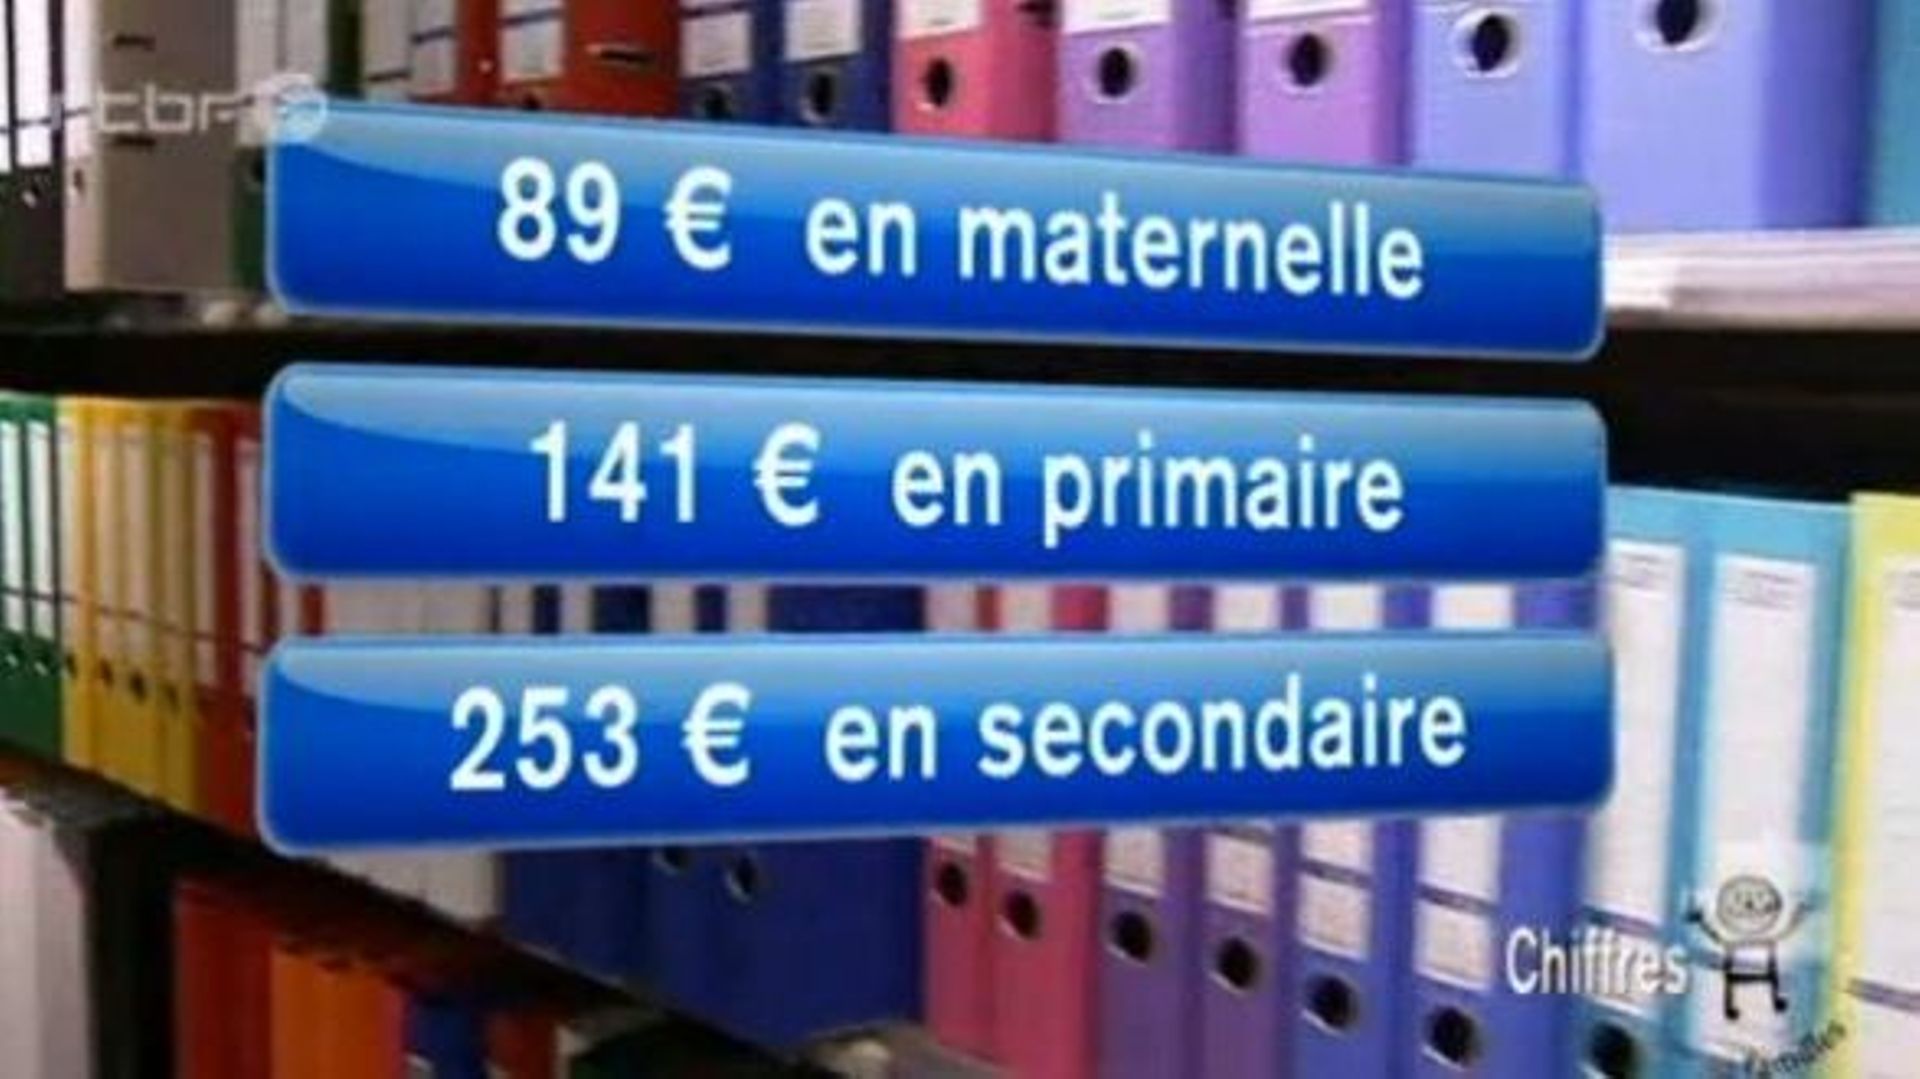 Rentrée scolaire : des livres scolaires à louer pour 5 euros l'année